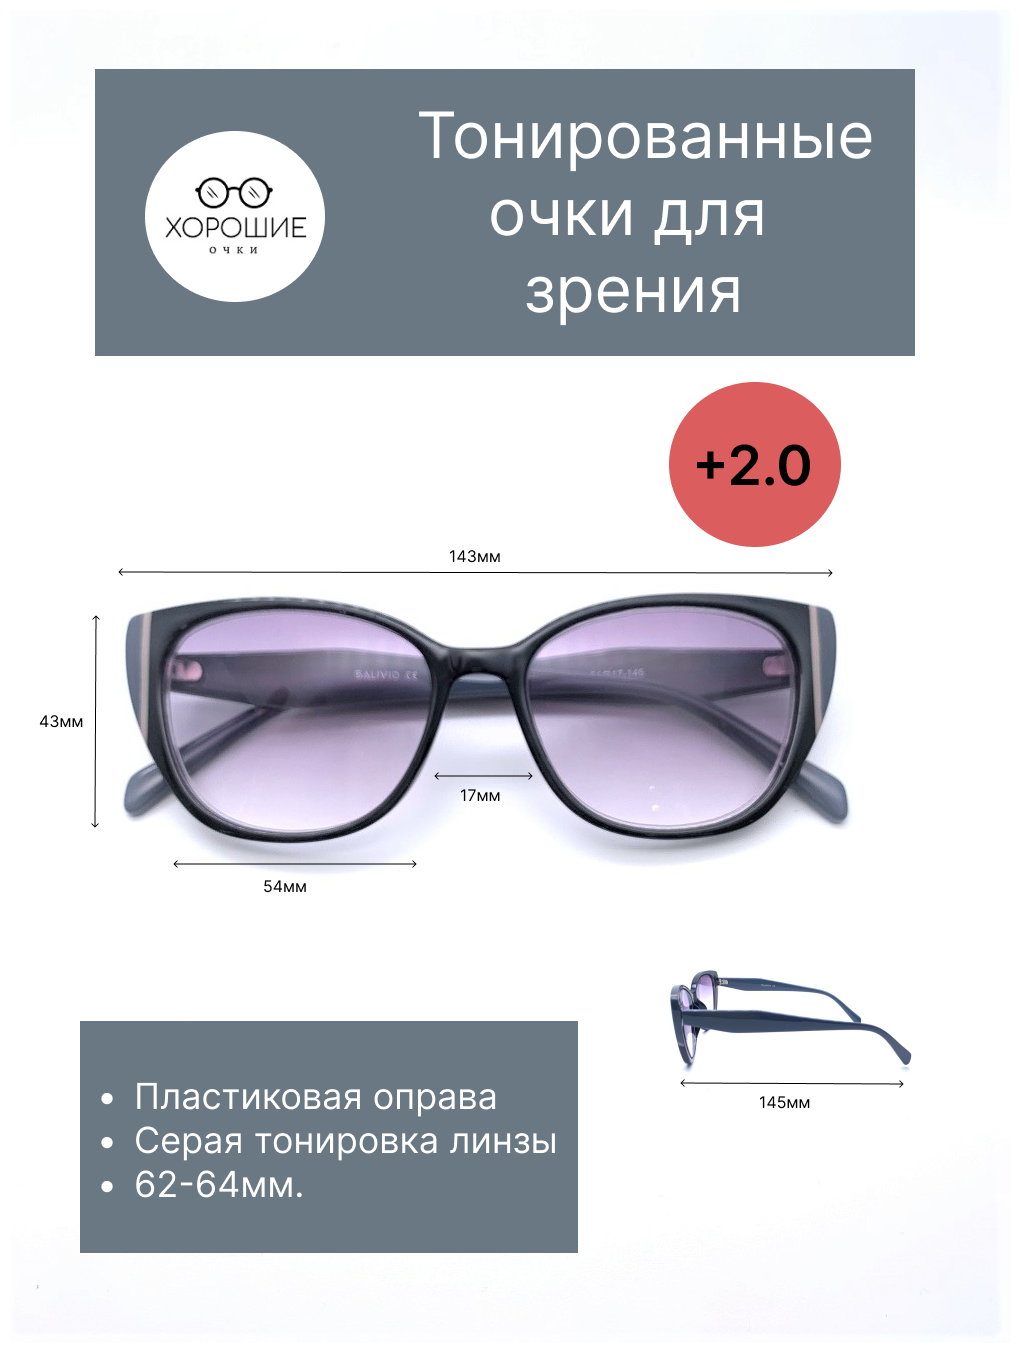 Готовые тонированные/солнцезащитные очки для зрения с диоптриями +2.0